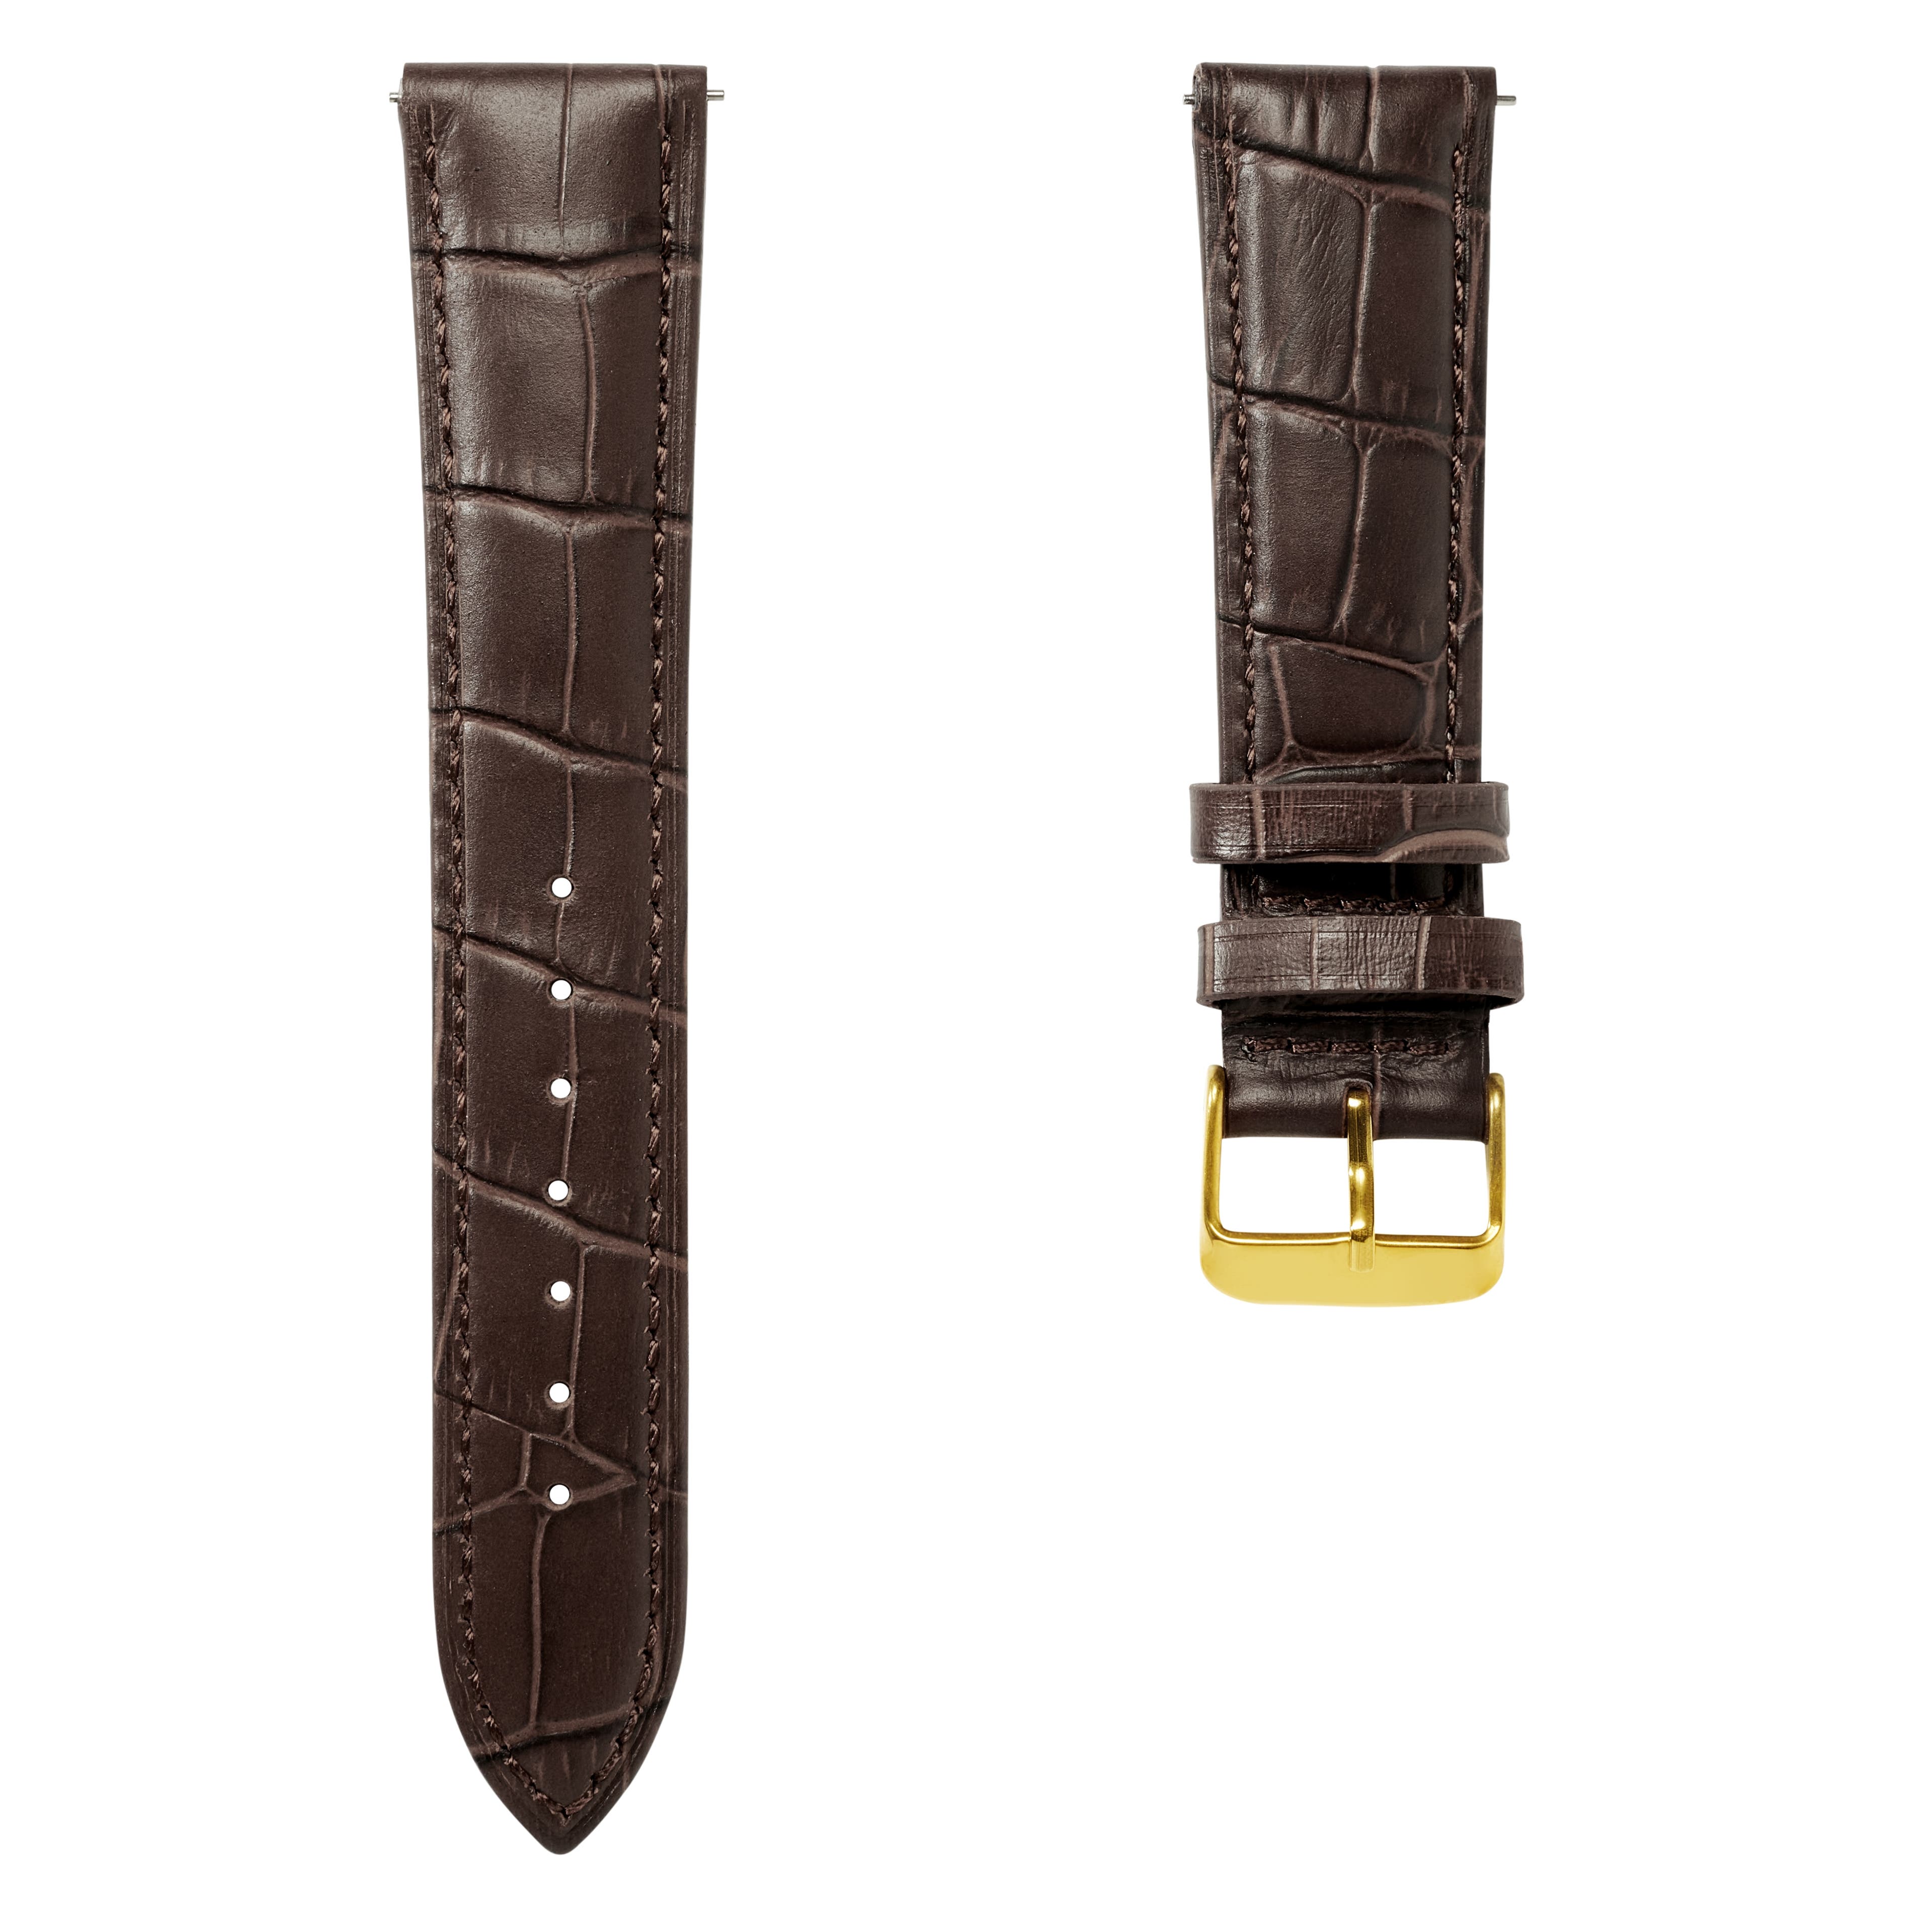 Pulseira de Relógio em Pele Castanha Escura com Relevo Crocodilo e Fivela Dourada de 21 mm - Libertação Rápida